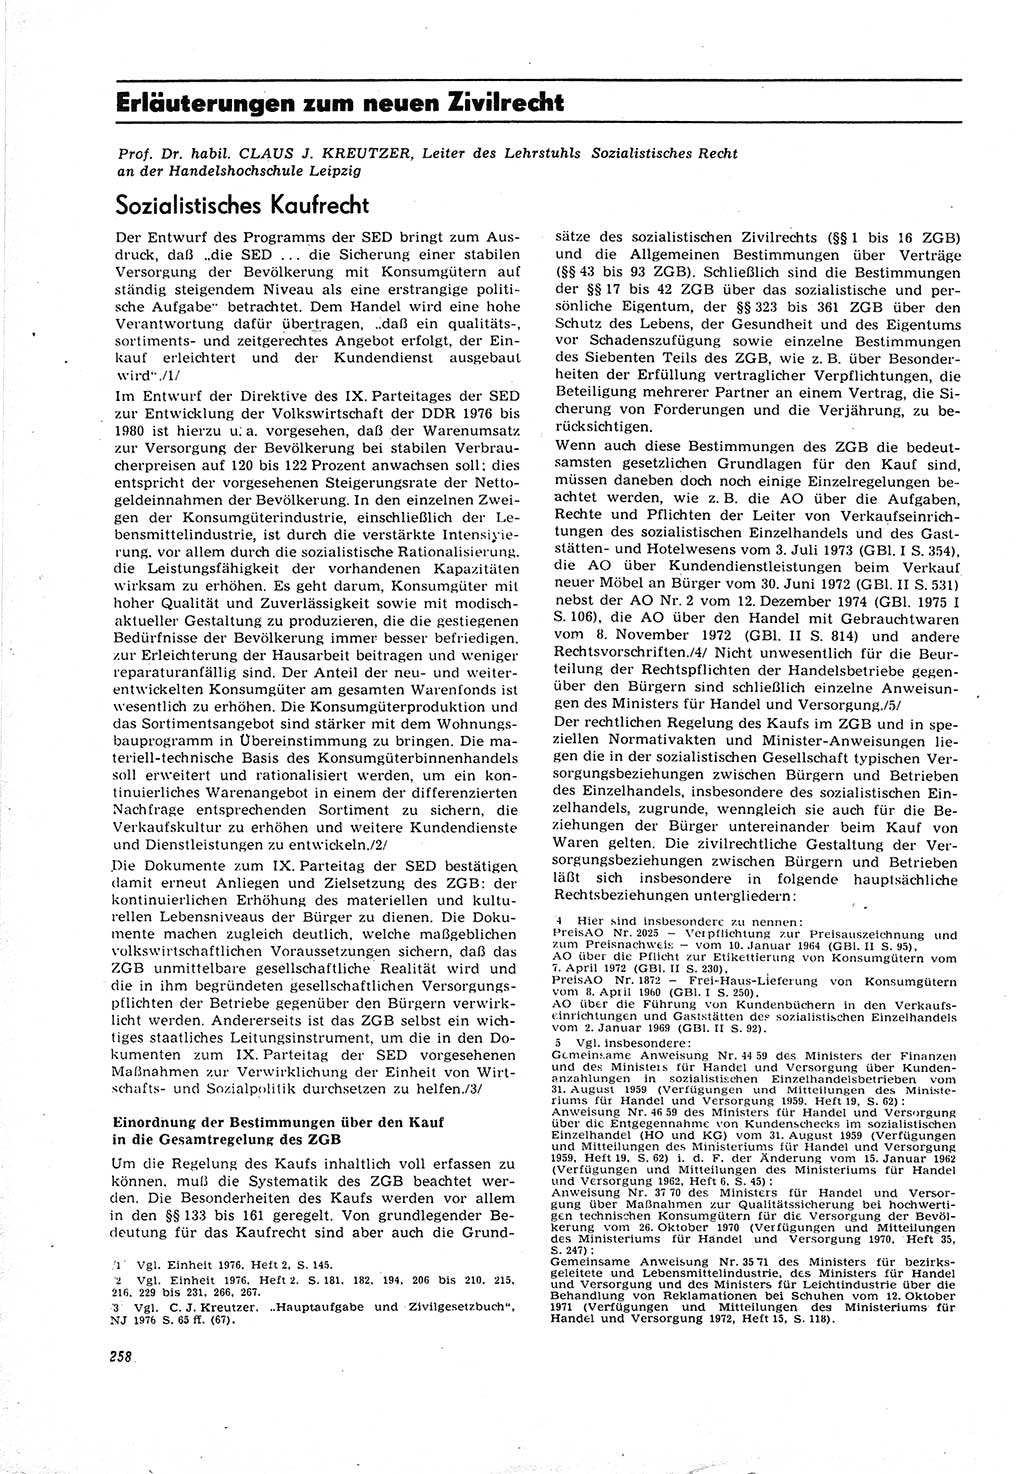 Neue Justiz (NJ), Zeitschrift für Recht und Rechtswissenschaft [Deutsche Demokratische Republik (DDR)], 30. Jahrgang 1976, Seite 258 (NJ DDR 1976, S. 258)